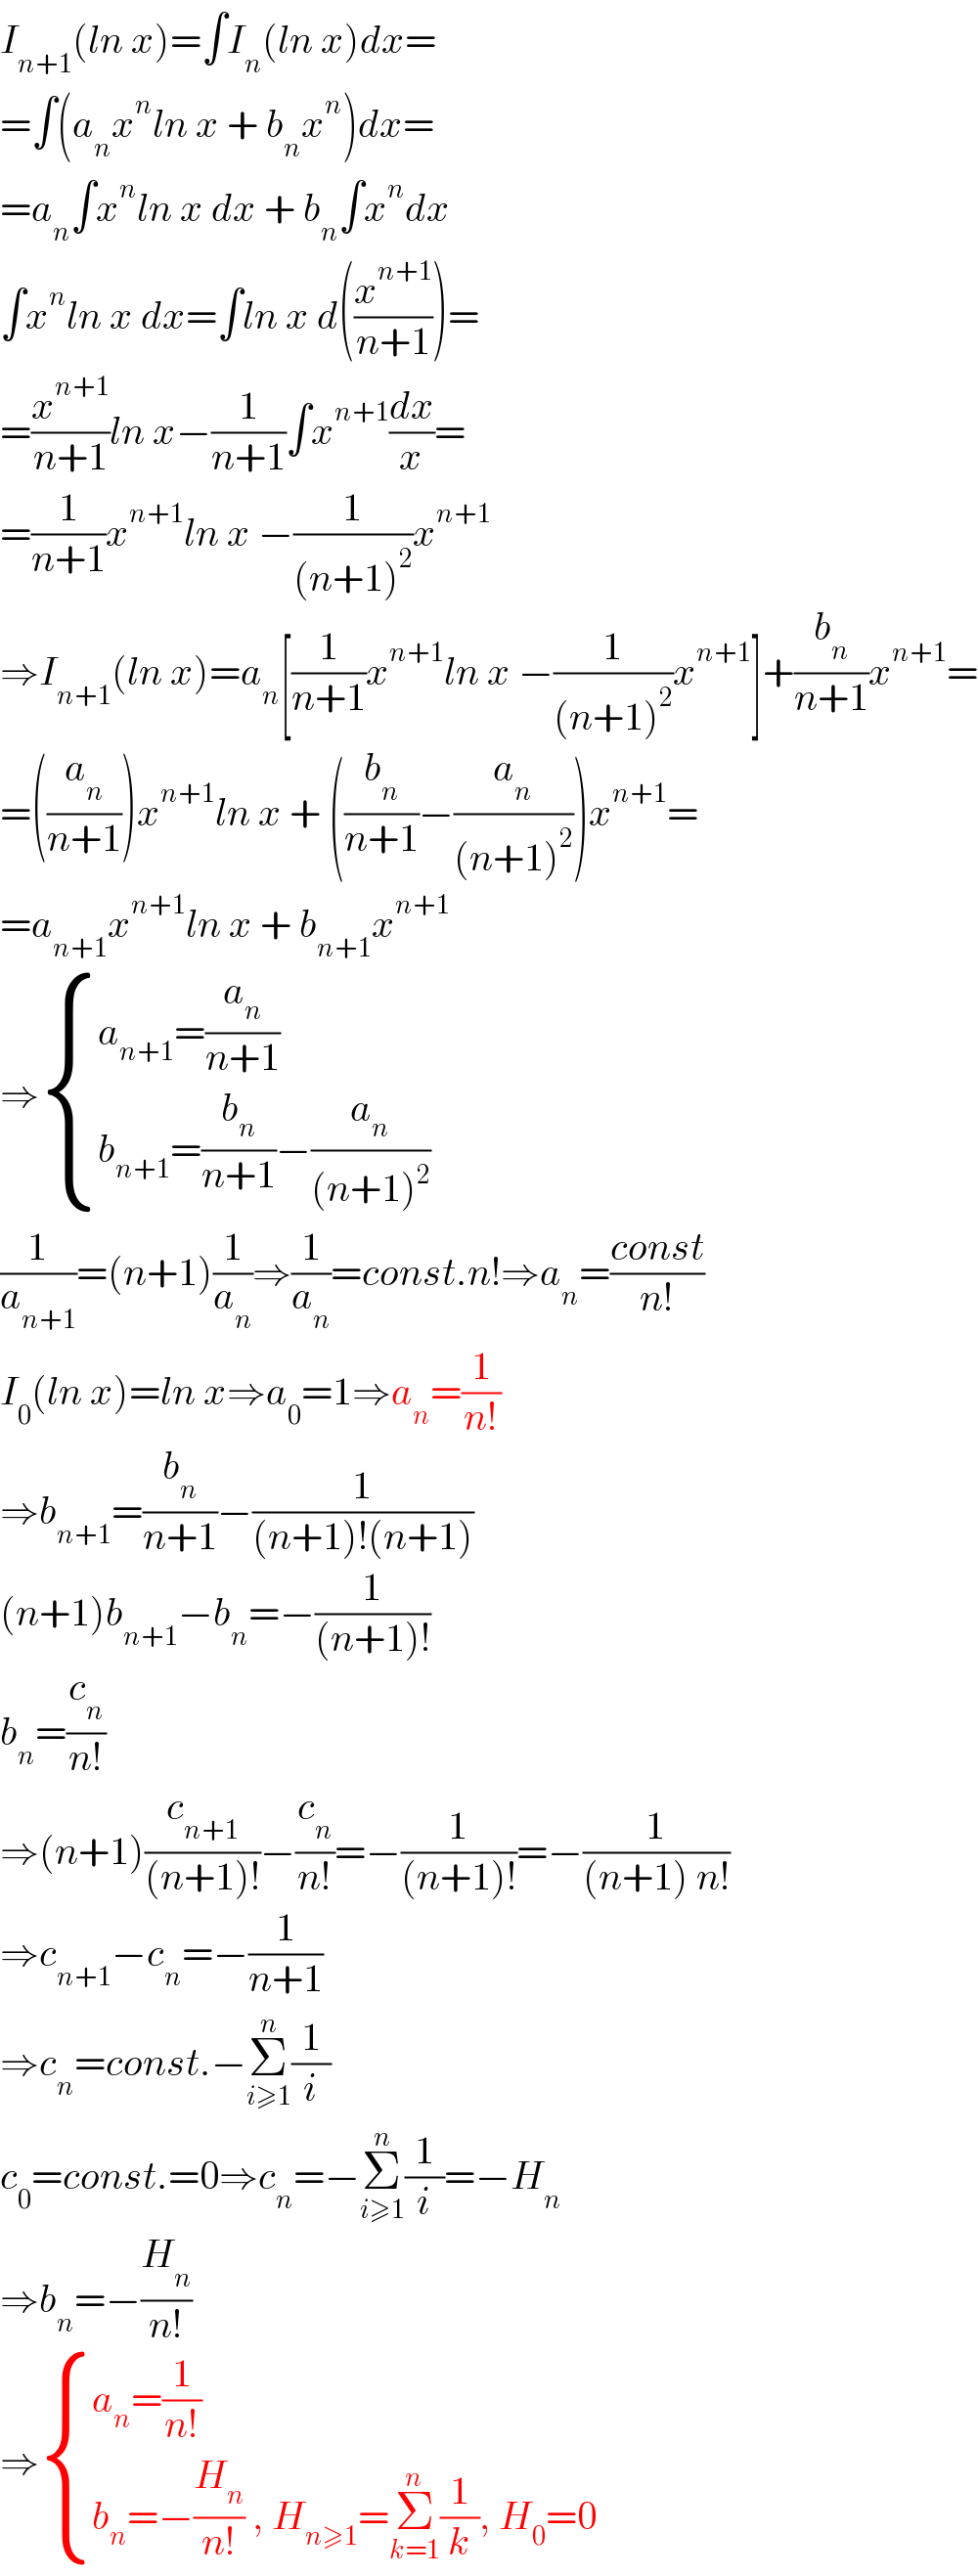 I_(n+1) (ln x)=∫I_n (ln x)dx=  =∫(a_n x^n ln x + b_n x^n )dx=  =a_n ∫x^n ln x dx + b_n ∫x^n dx  ∫x^n ln x dx=∫ln x d((x^(n+1) /(n+1)))=  =(x^(n+1) /(n+1))ln x−(1/(n+1))∫x^(n+1) (dx/x)=  =(1/(n+1))x^(n+1) ln x −(1/((n+1)^2 ))x^(n+1)   ⇒I_(n+1) (ln x)=a_n [(1/(n+1))x^(n+1) ln x −(1/((n+1)^2 ))x^(n+1) ]+(b_n /(n+1))x^(n+1) =  =((a_n /(n+1)))x^(n+1) ln x + ((b_n /(n+1))−(a_n /((n+1)^2 )))x^(n+1) =  =a_(n+1) x^(n+1) ln x + b_(n+1) x^(n+1)   ⇒ { ((a_(n+1) =(a_n /(n+1)))),((b_(n+1) =(b_n /(n+1))−(a_n /((n+1)^2 )))) :}  (1/a_(n+1) )=(n+1)(1/a_n )⇒(1/a_n )=const.n!⇒a_n =((const)/(n!))  I_0 (ln x)=ln x⇒a_0 =1⇒a_n =(1/(n!))  ⇒b_(n+1) =(b_n /(n+1))−(1/((n+1)!(n+1)))  (n+1)b_(n+1) −b_n =−(1/((n+1)!))  b_n =(c_n /(n!))  ⇒(n+1)(c_(n+1) /((n+1)!))−(c_n /(n!))=−(1/((n+1)!))=−(1/((n+1) n!))  ⇒c_(n+1) −c_n =−(1/(n+1))  ⇒c_n =const.−Σ_(i≥1) ^n (1/i)  c_0 =const.=0⇒c_n =−Σ_(i≥1) ^n (1/i)=−H_n   ⇒b_n =−(H_n /(n!))  ⇒ { ((a_n =(1/(n!)))),((b_n =−(H_n /(n!)) , H_(n≥1) =Σ_(k=1) ^n (1/k), H_0 =0)) :}  